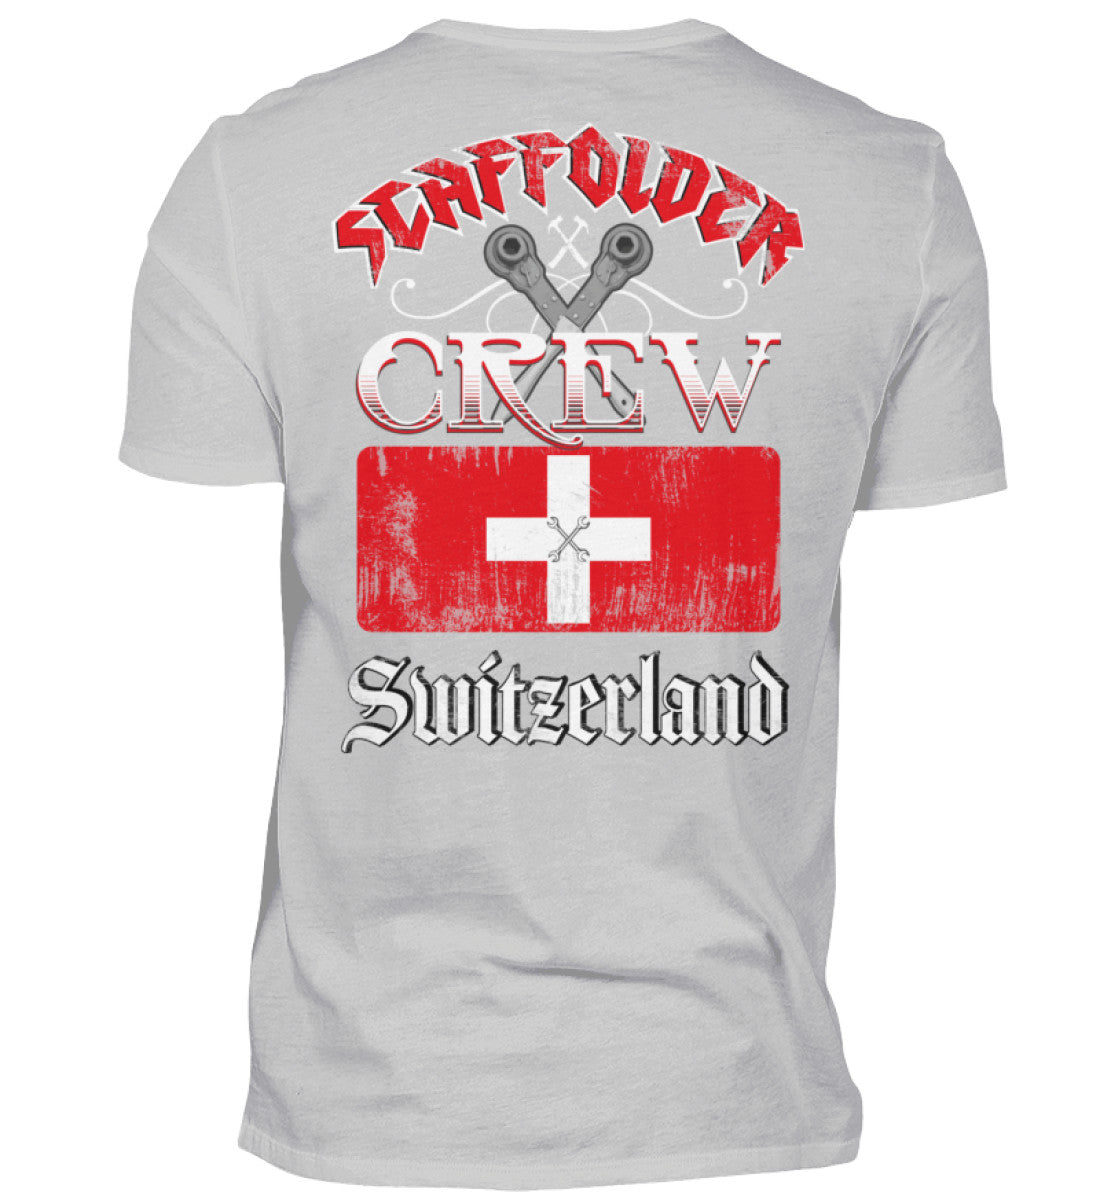 Gerüstbauer T-Shirt Scaffolder Crew Switzerland €24.95 Gerüstbauer - Shop >>